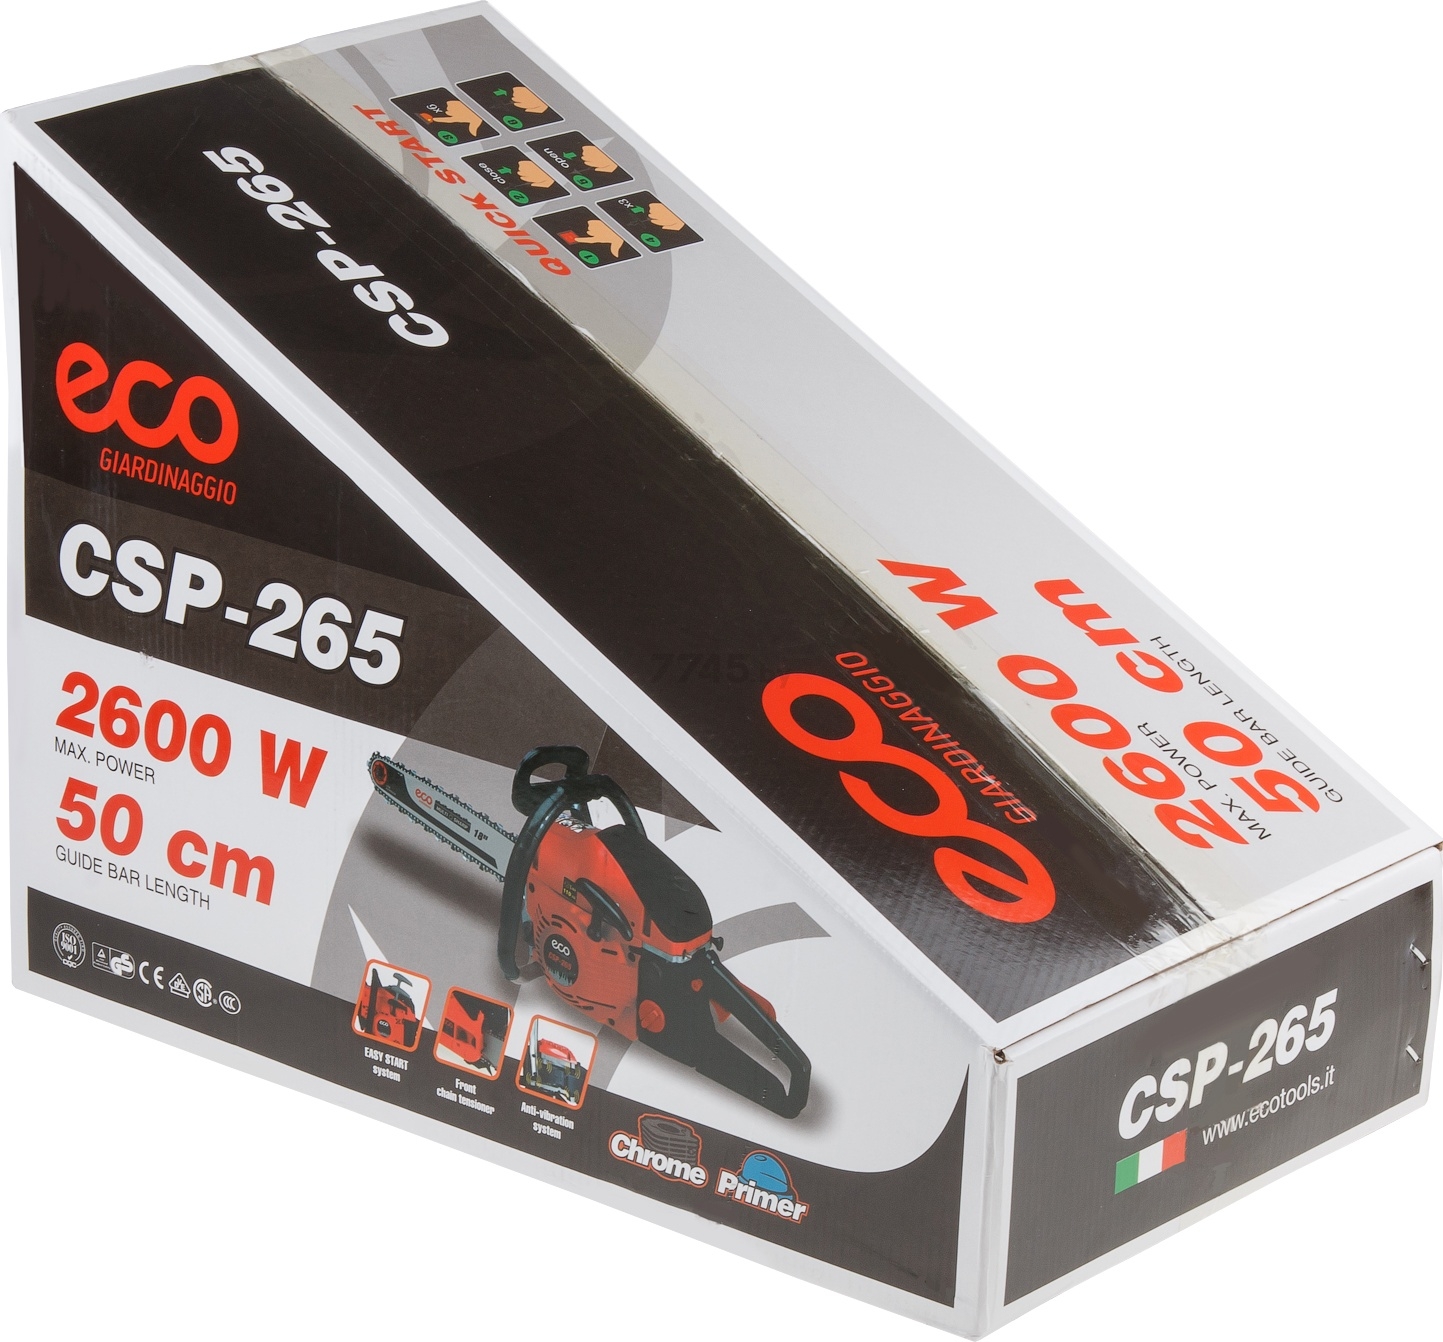  ECO CSP-265  в Минске — цены в е 7745.by